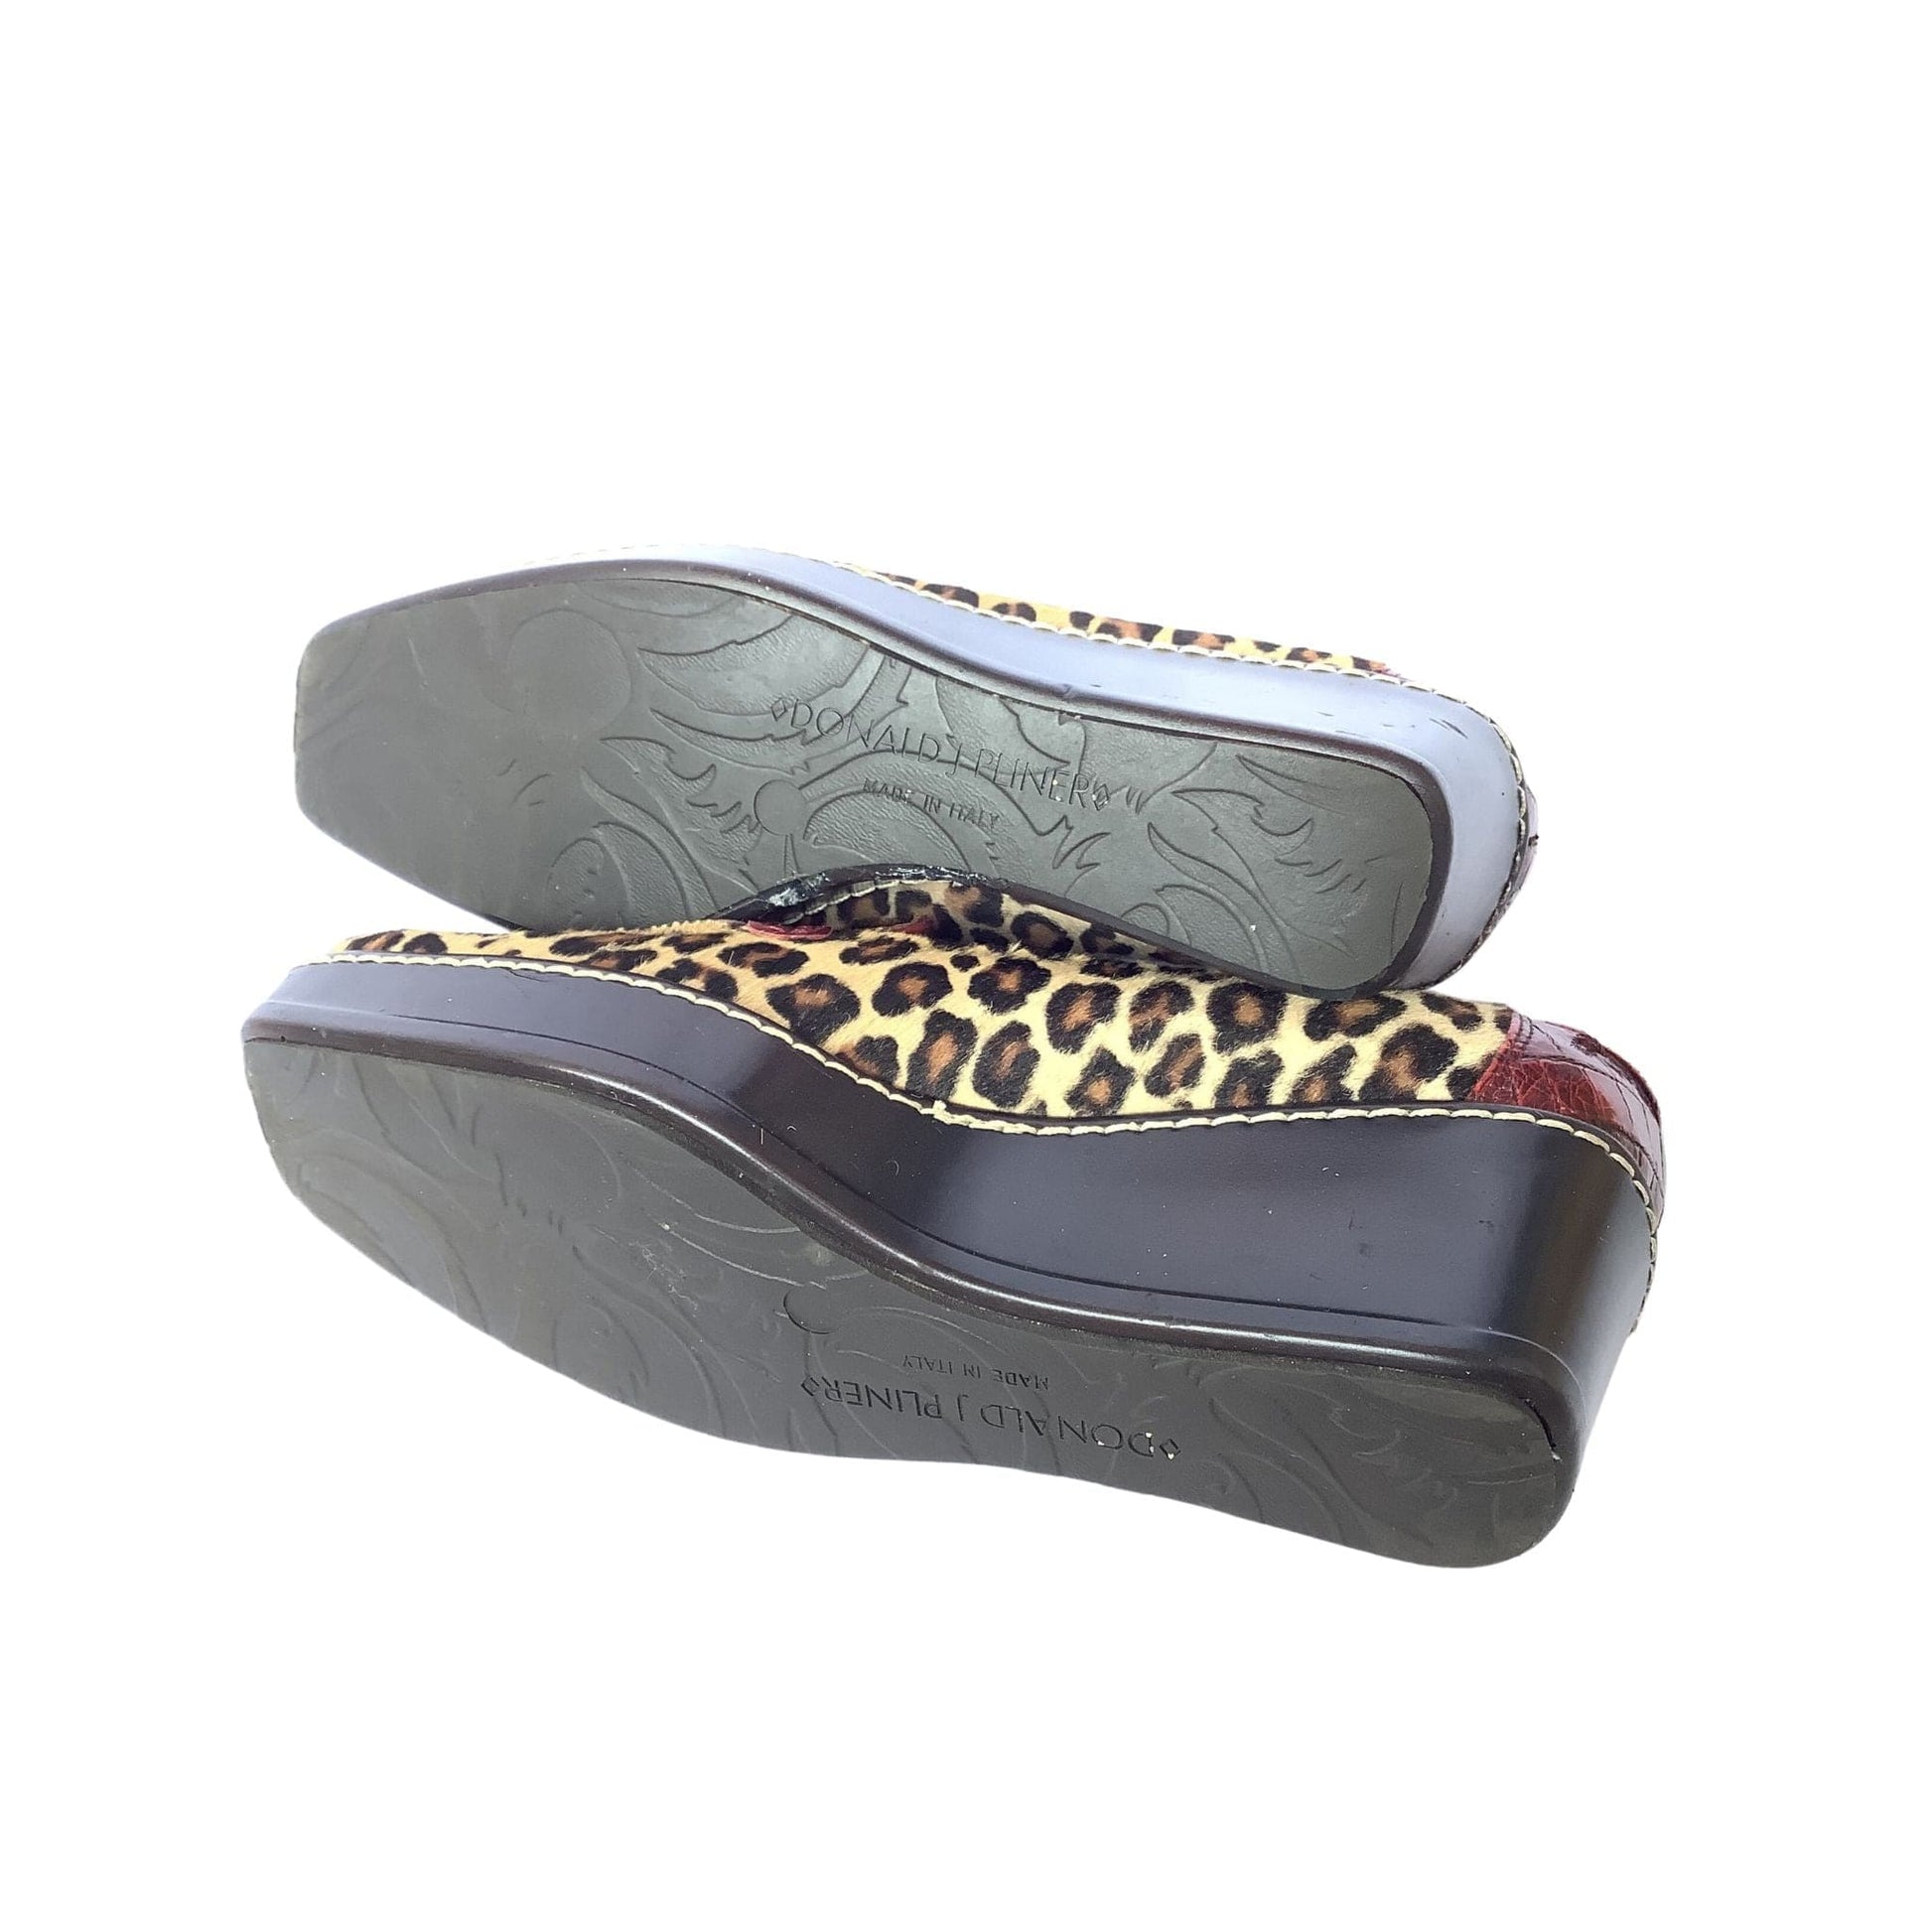 Faux Leopard Wedge Loafers 7 / Multi / Y2K - Now